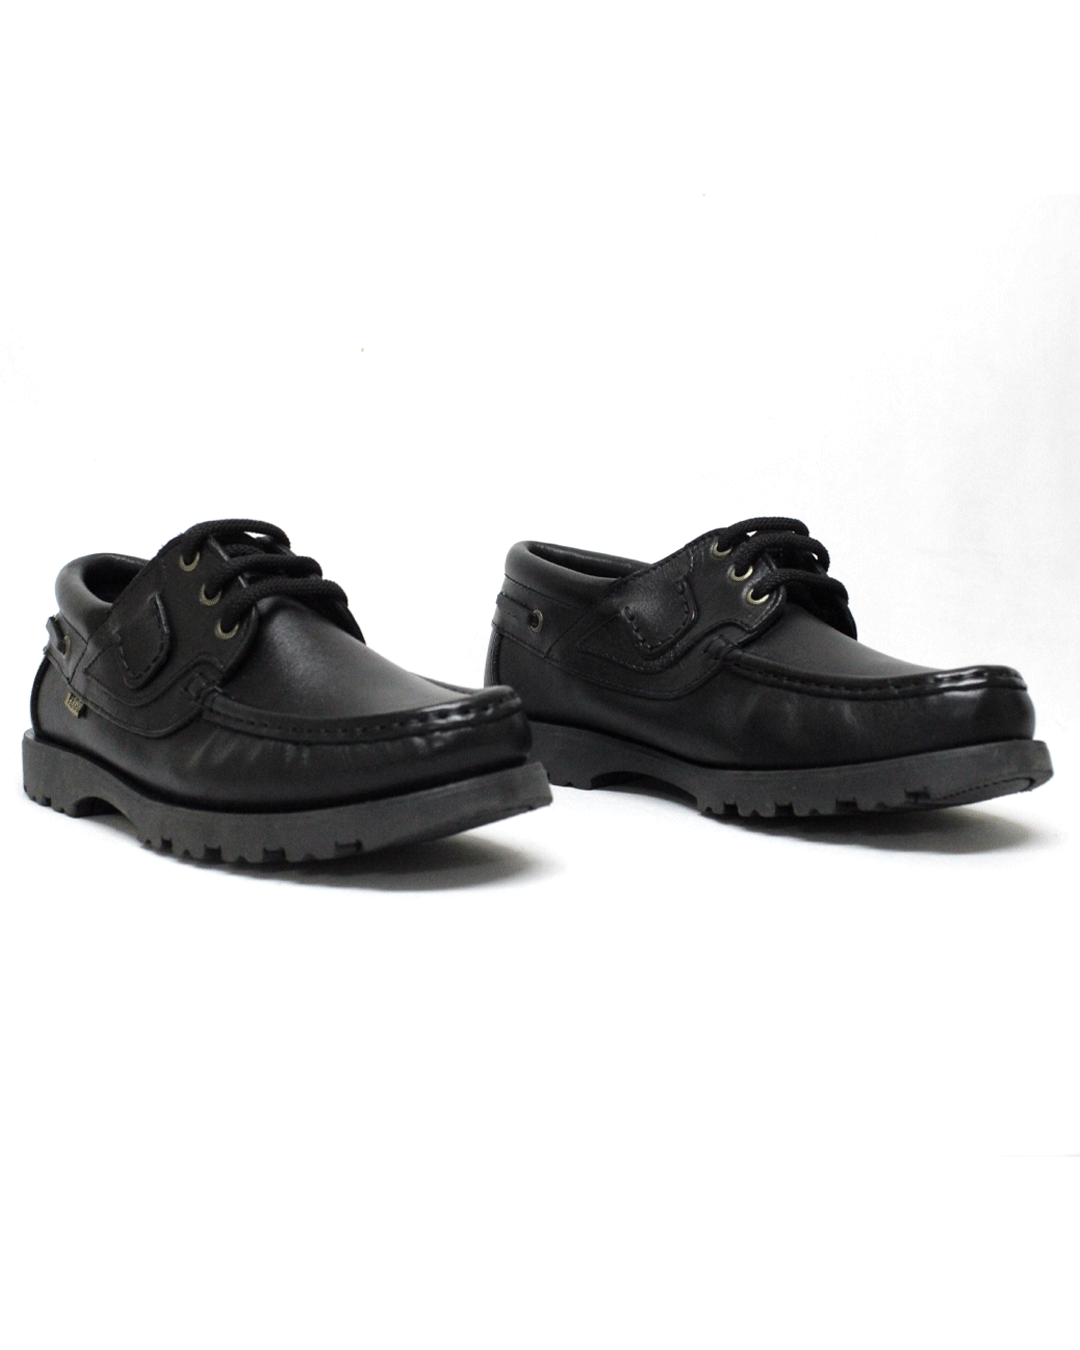 TEGO Black Leather Shoe